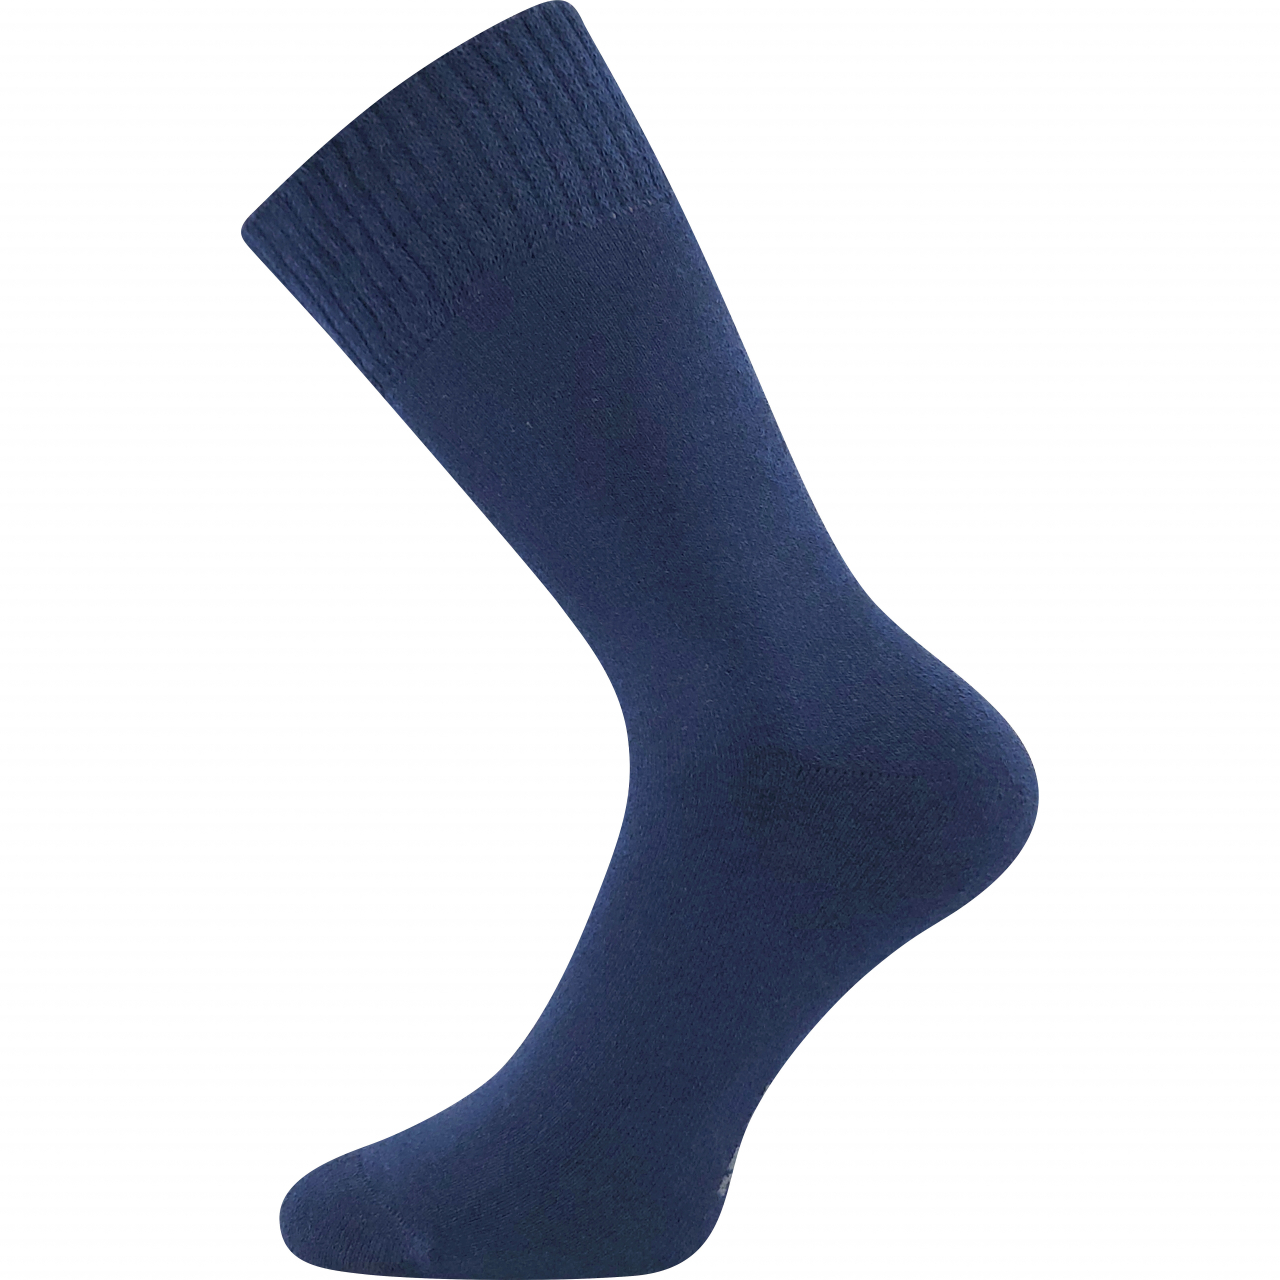 Ponožky klasické unisex Voxx Wolis - tmavě modré, 43-46